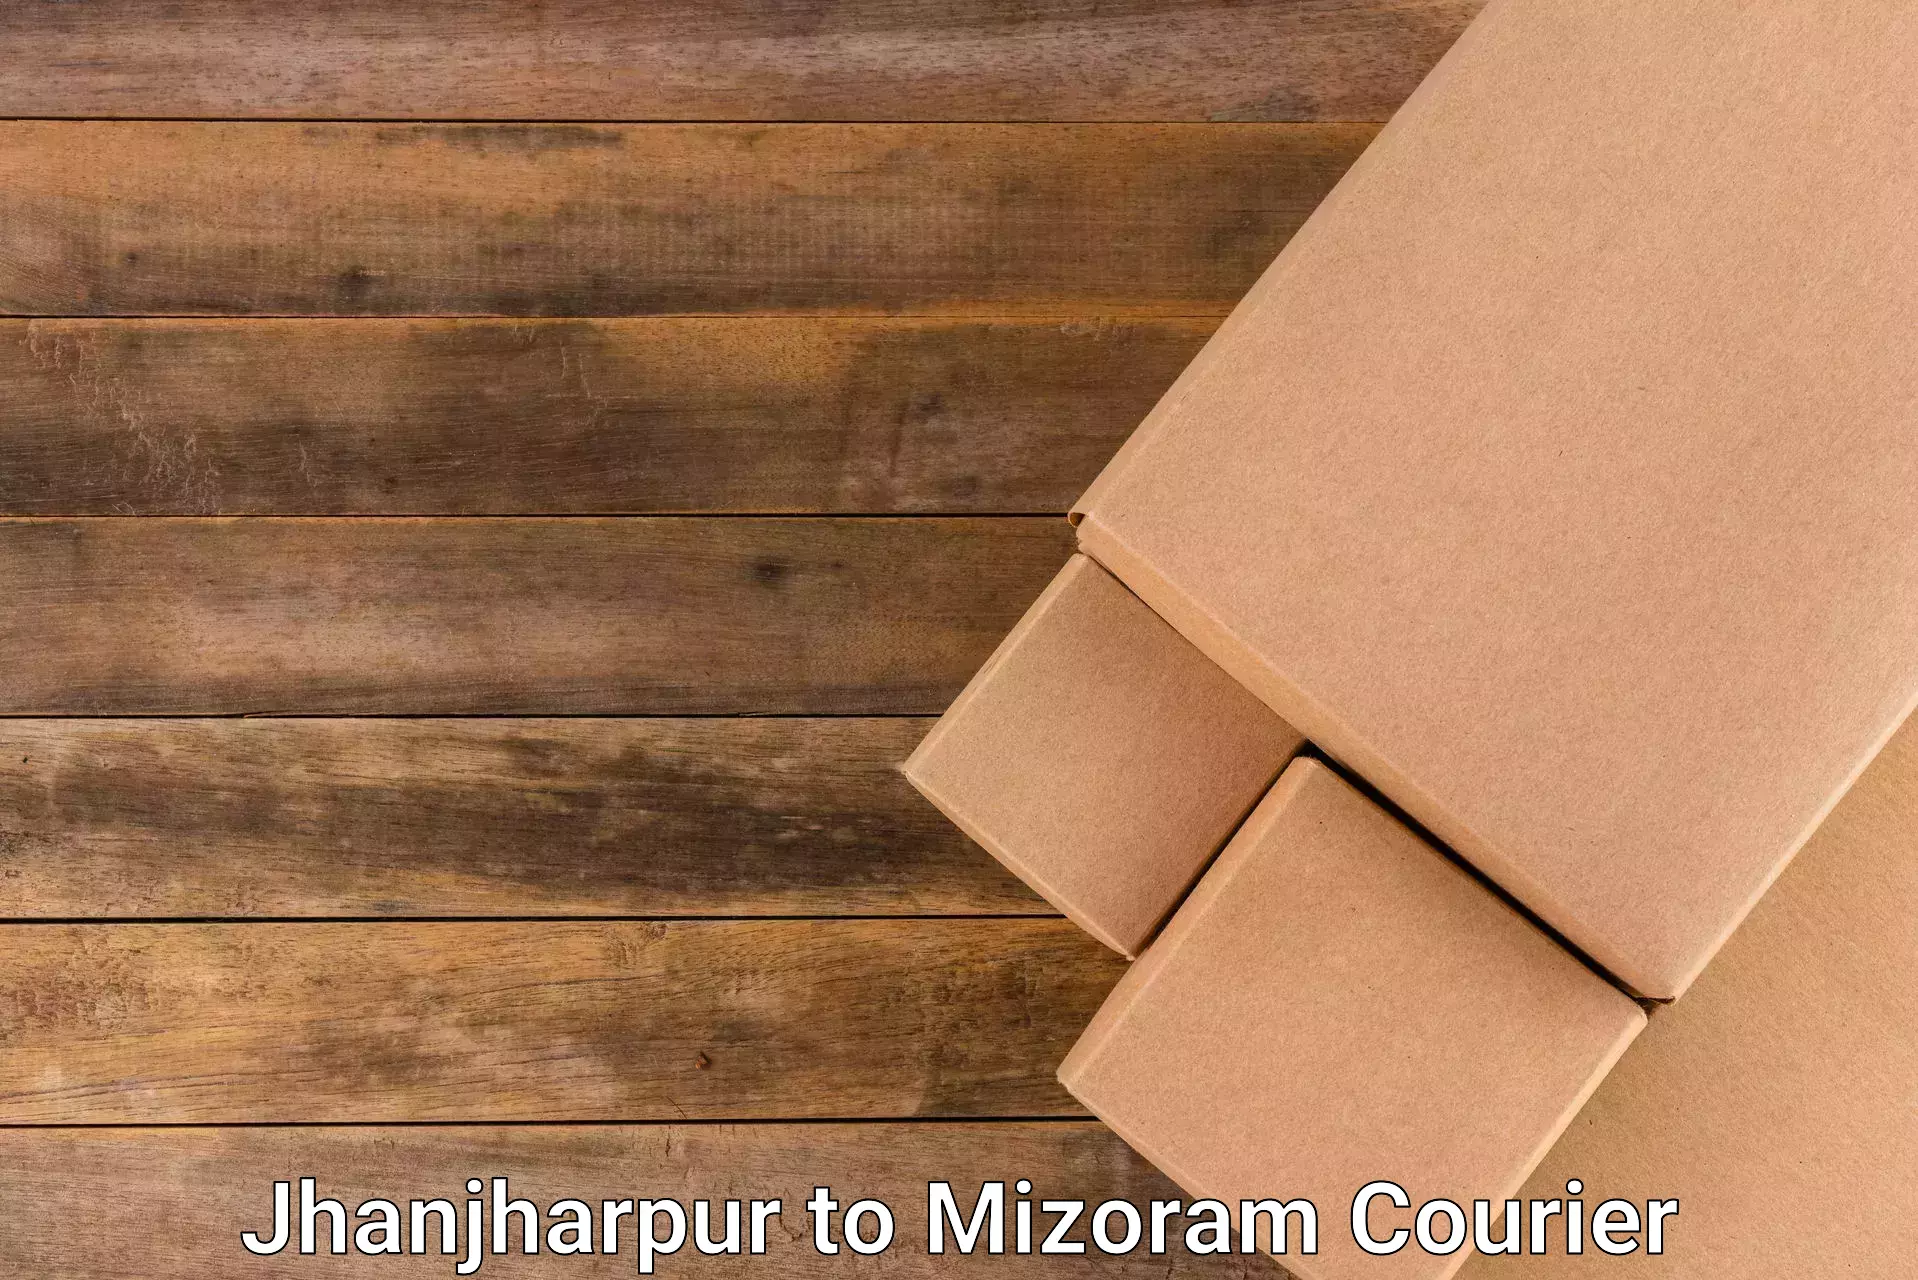 Flexible delivery scheduling Jhanjharpur to Mizoram